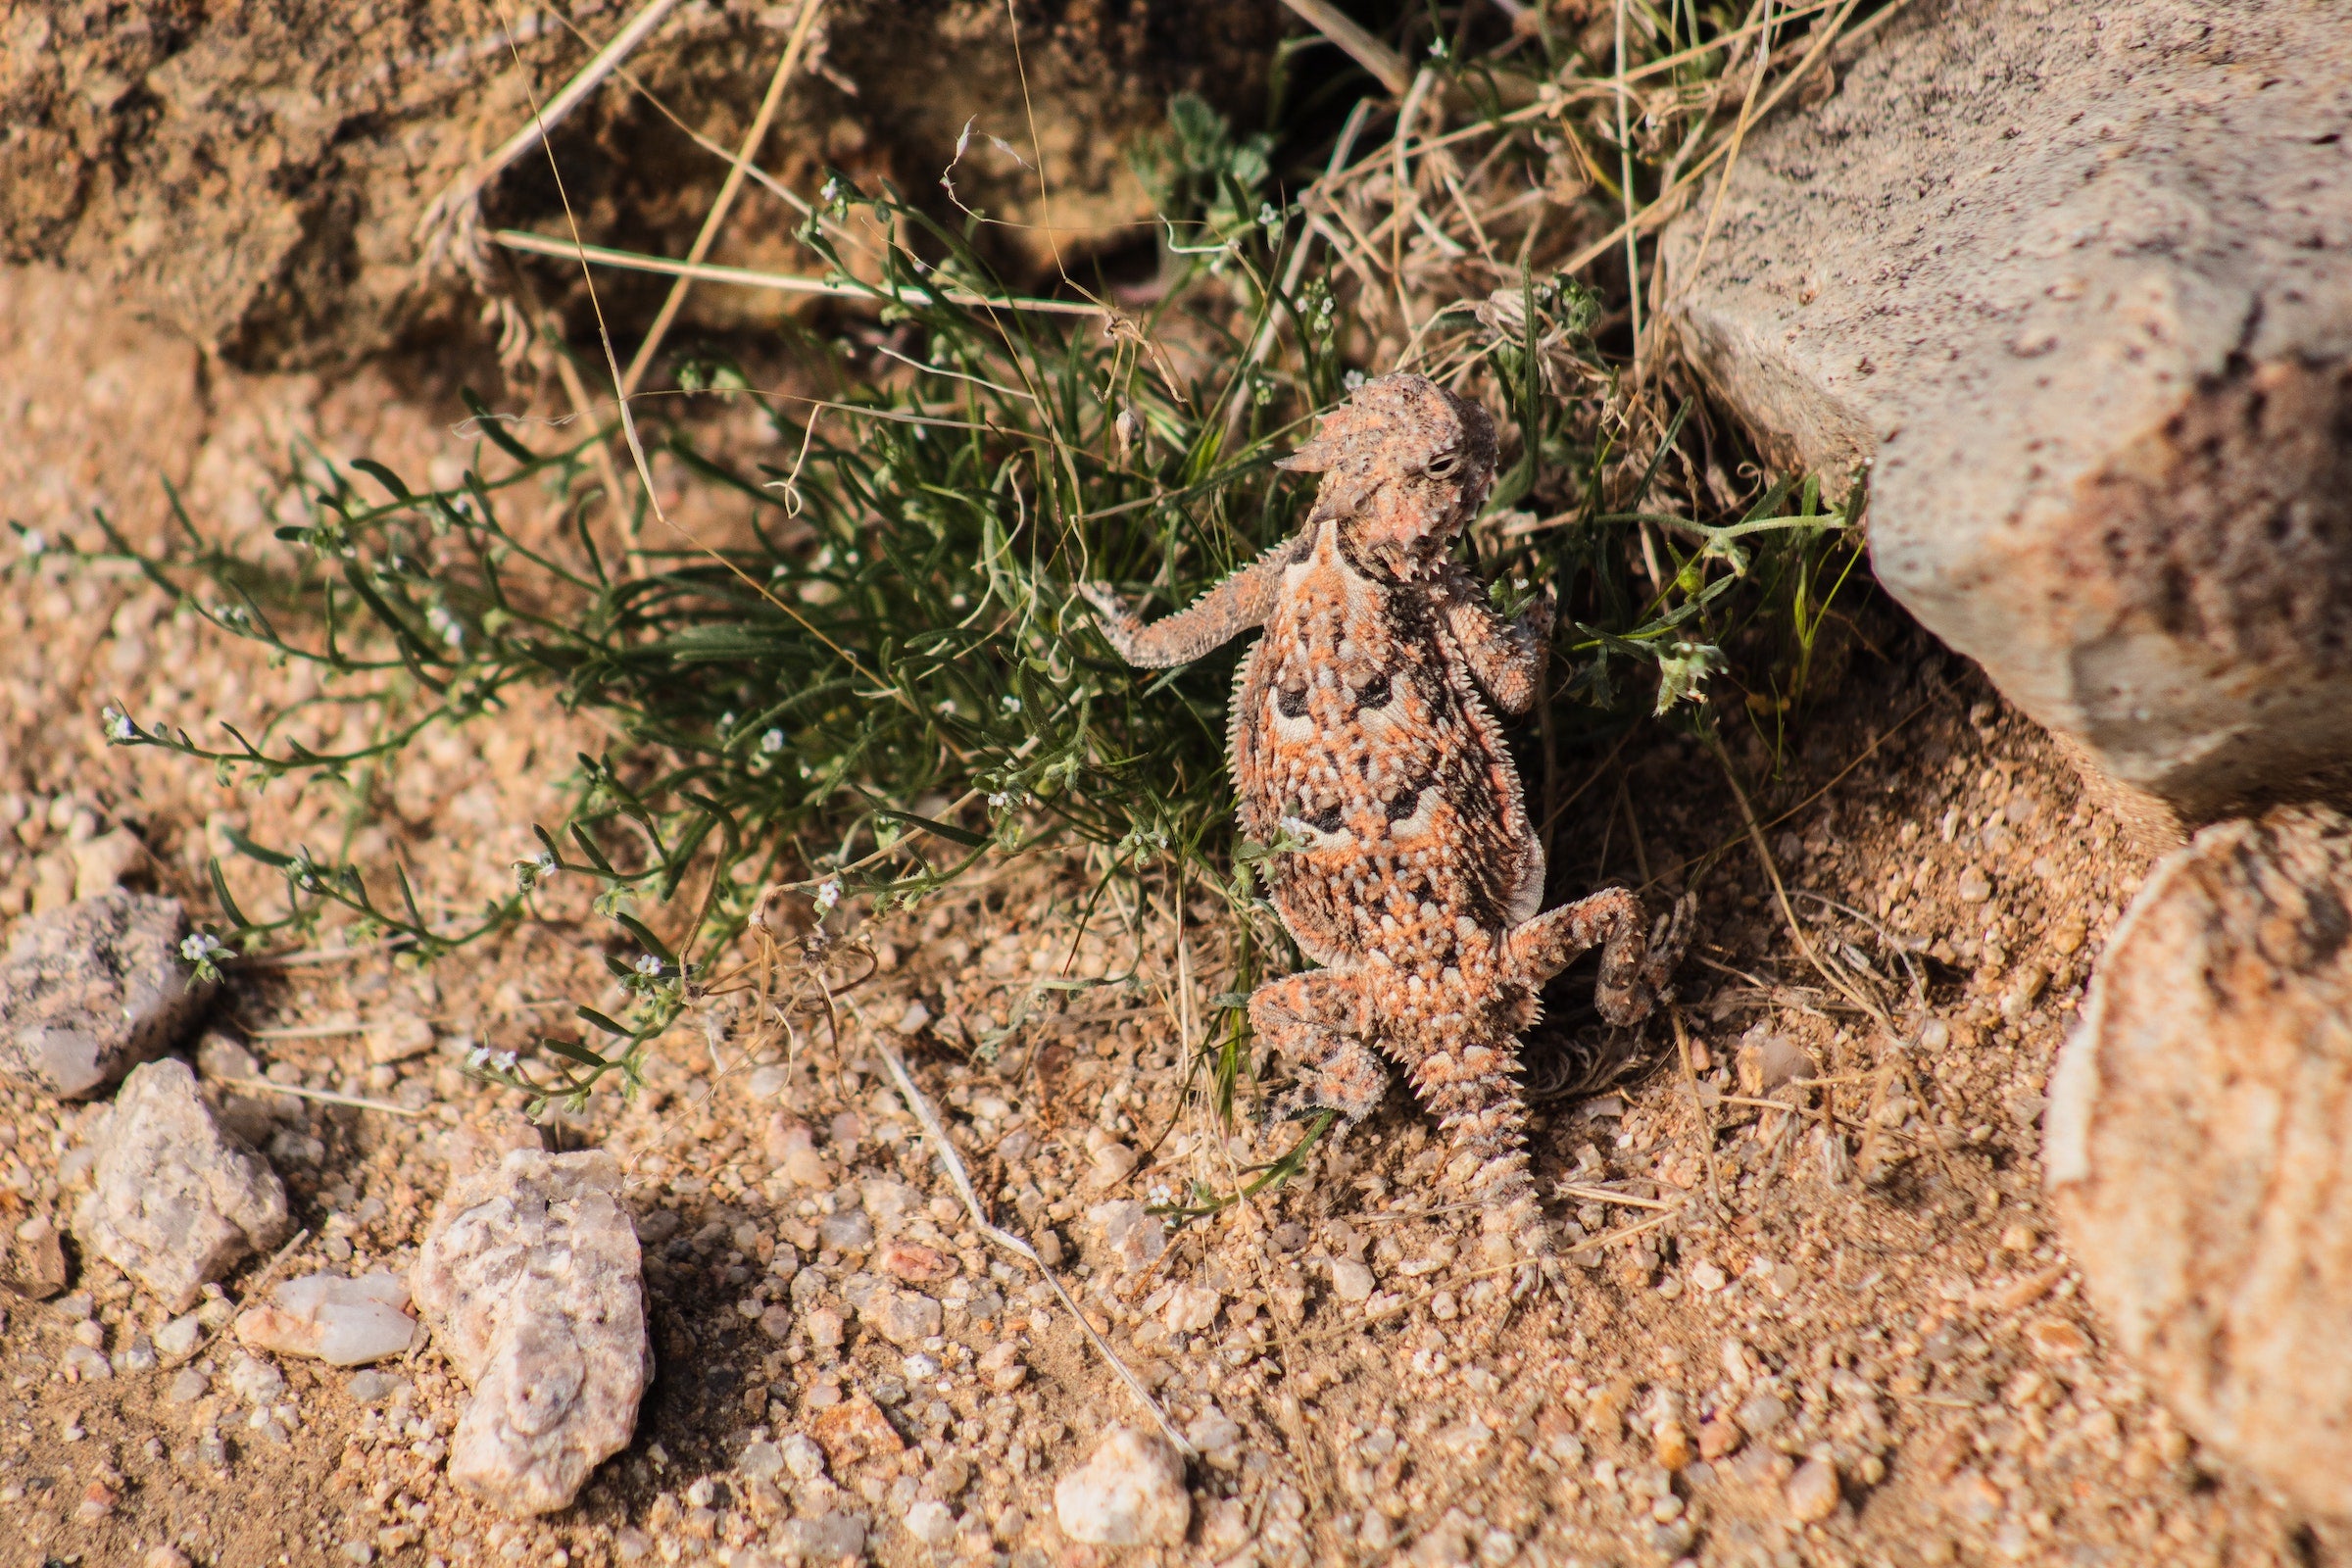 a lizard in the desert